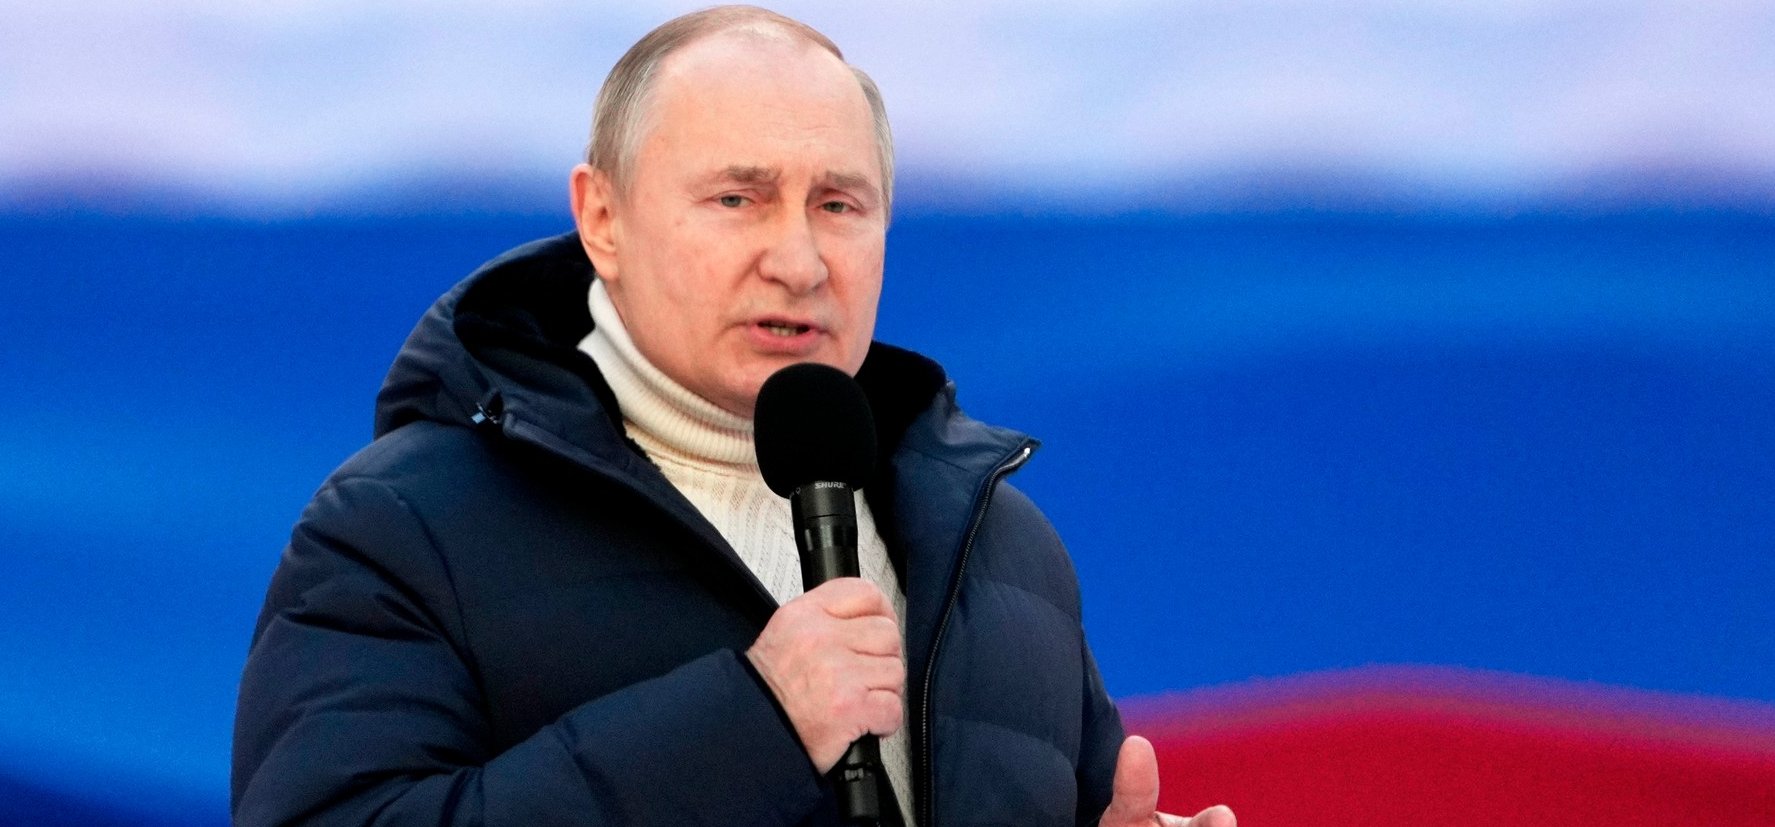 Putyinnak már jövő héten vége lehet? Állítólag meg akarják buktatni az orosz elnököt